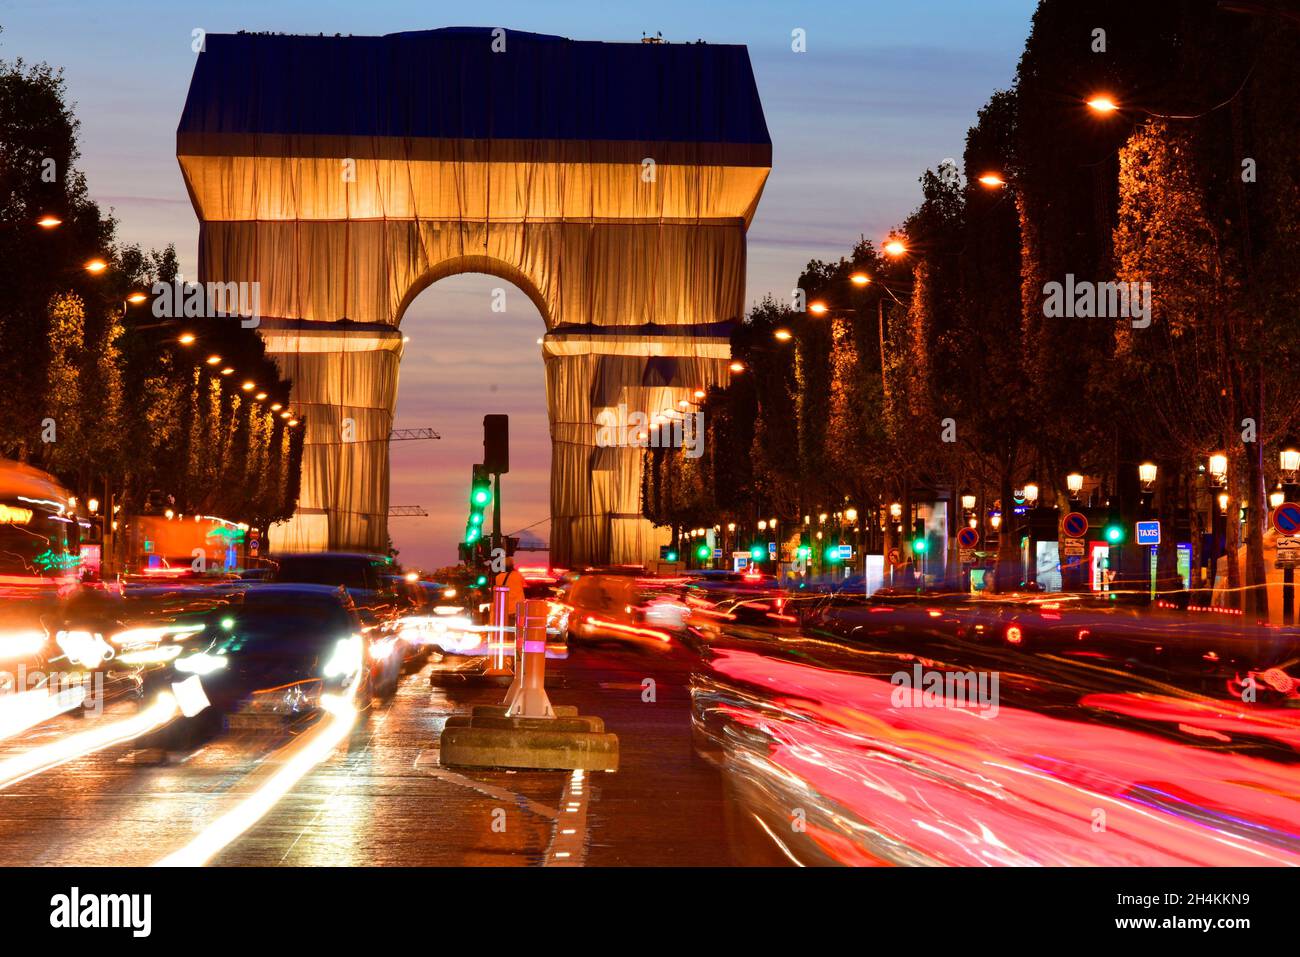 Vue nocturne de l'arche triomphale enveloppée de Christo depuis l'avenue des champs-Élysées, Paris, France. Banque D'Images